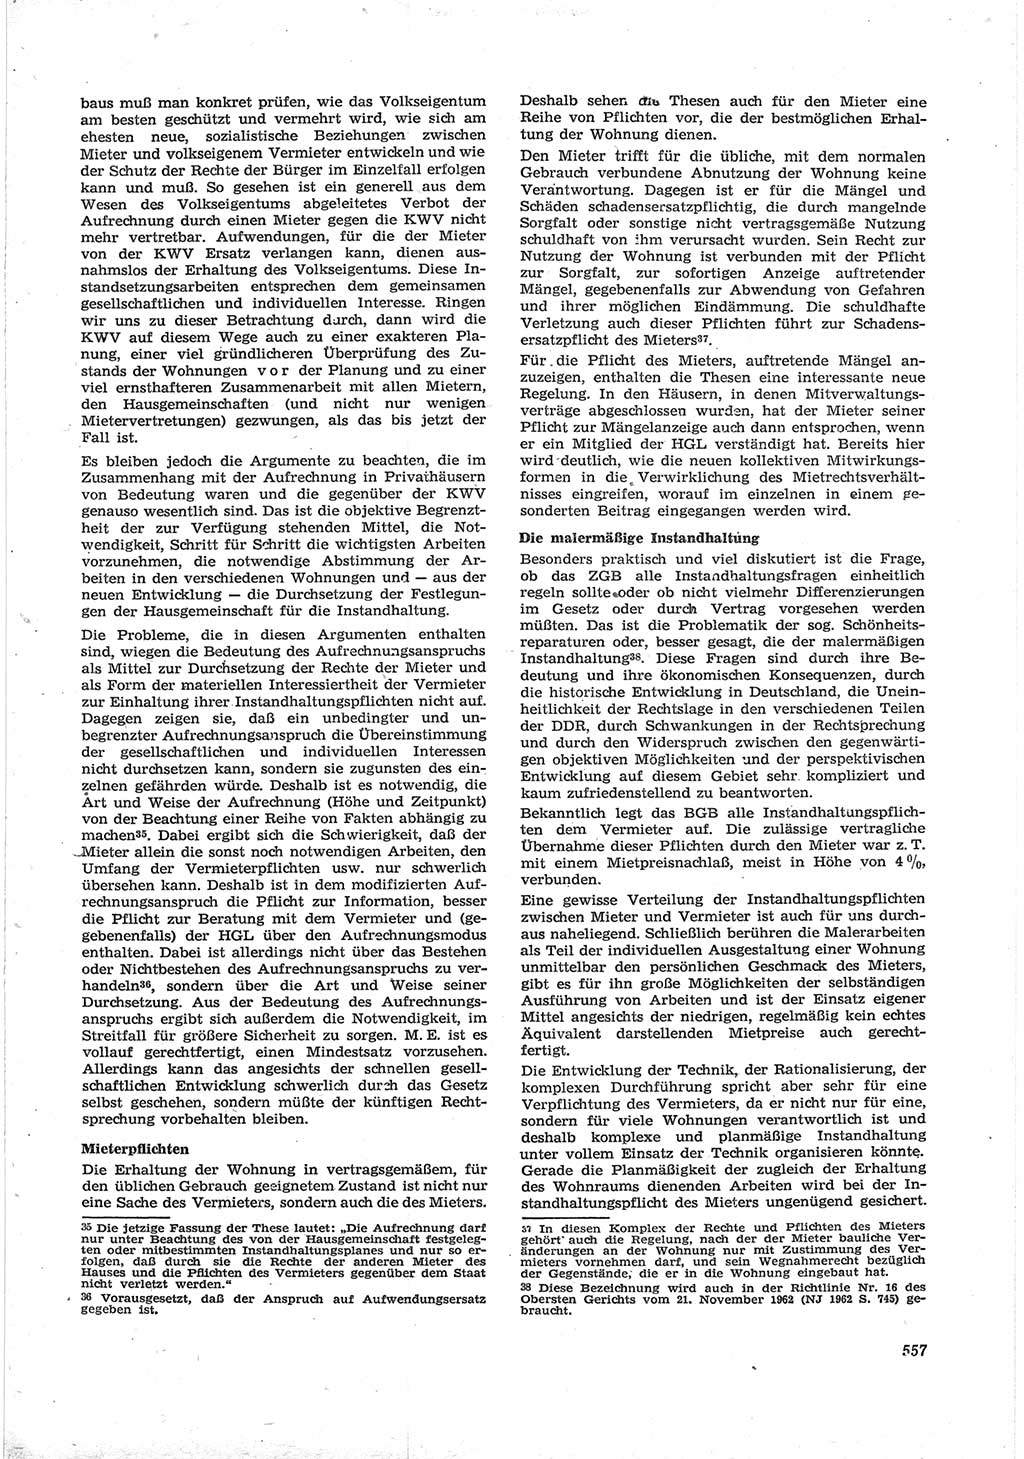 Neue Justiz (NJ), Zeitschrift für Recht und Rechtswissenschaft [Deutsche Demokratische Republik (DDR)], 17. Jahrgang 1963, Seite 557 (NJ DDR 1963, S. 557)